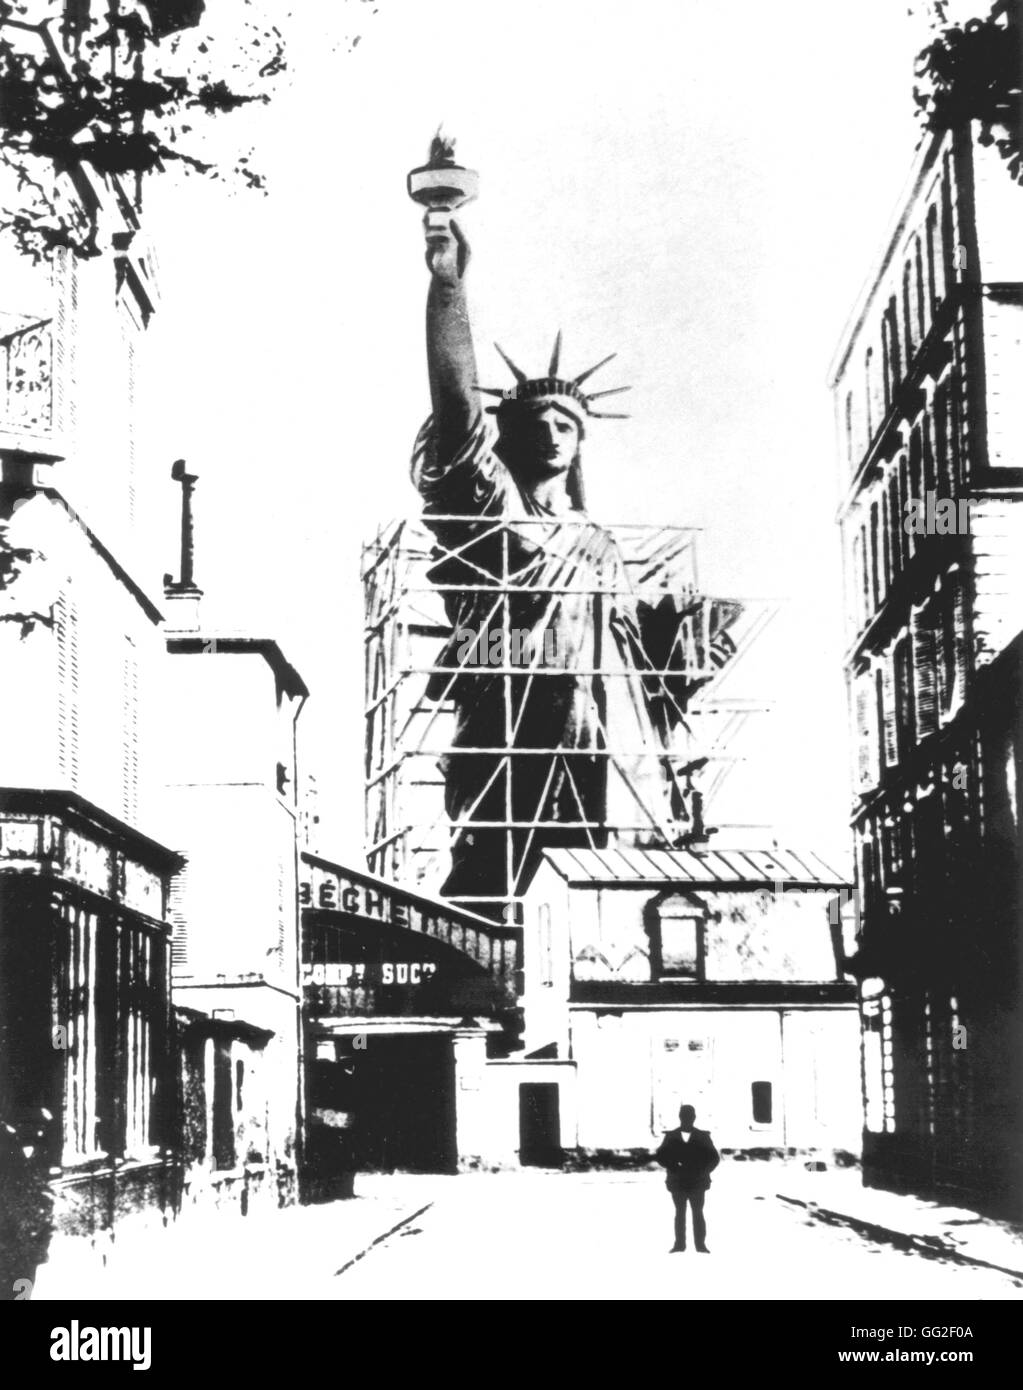 Scale Modell der Freiheitsstatue von Bartholdi, fotografiert in Paris, gesehen vom Boulevard de Courcelles erstellt. Einmal abgeschlossen, wurde die Statue nicht demontiert und nach Amerika geschickt.  Frankreich Washington. Library of Congress Stockfoto